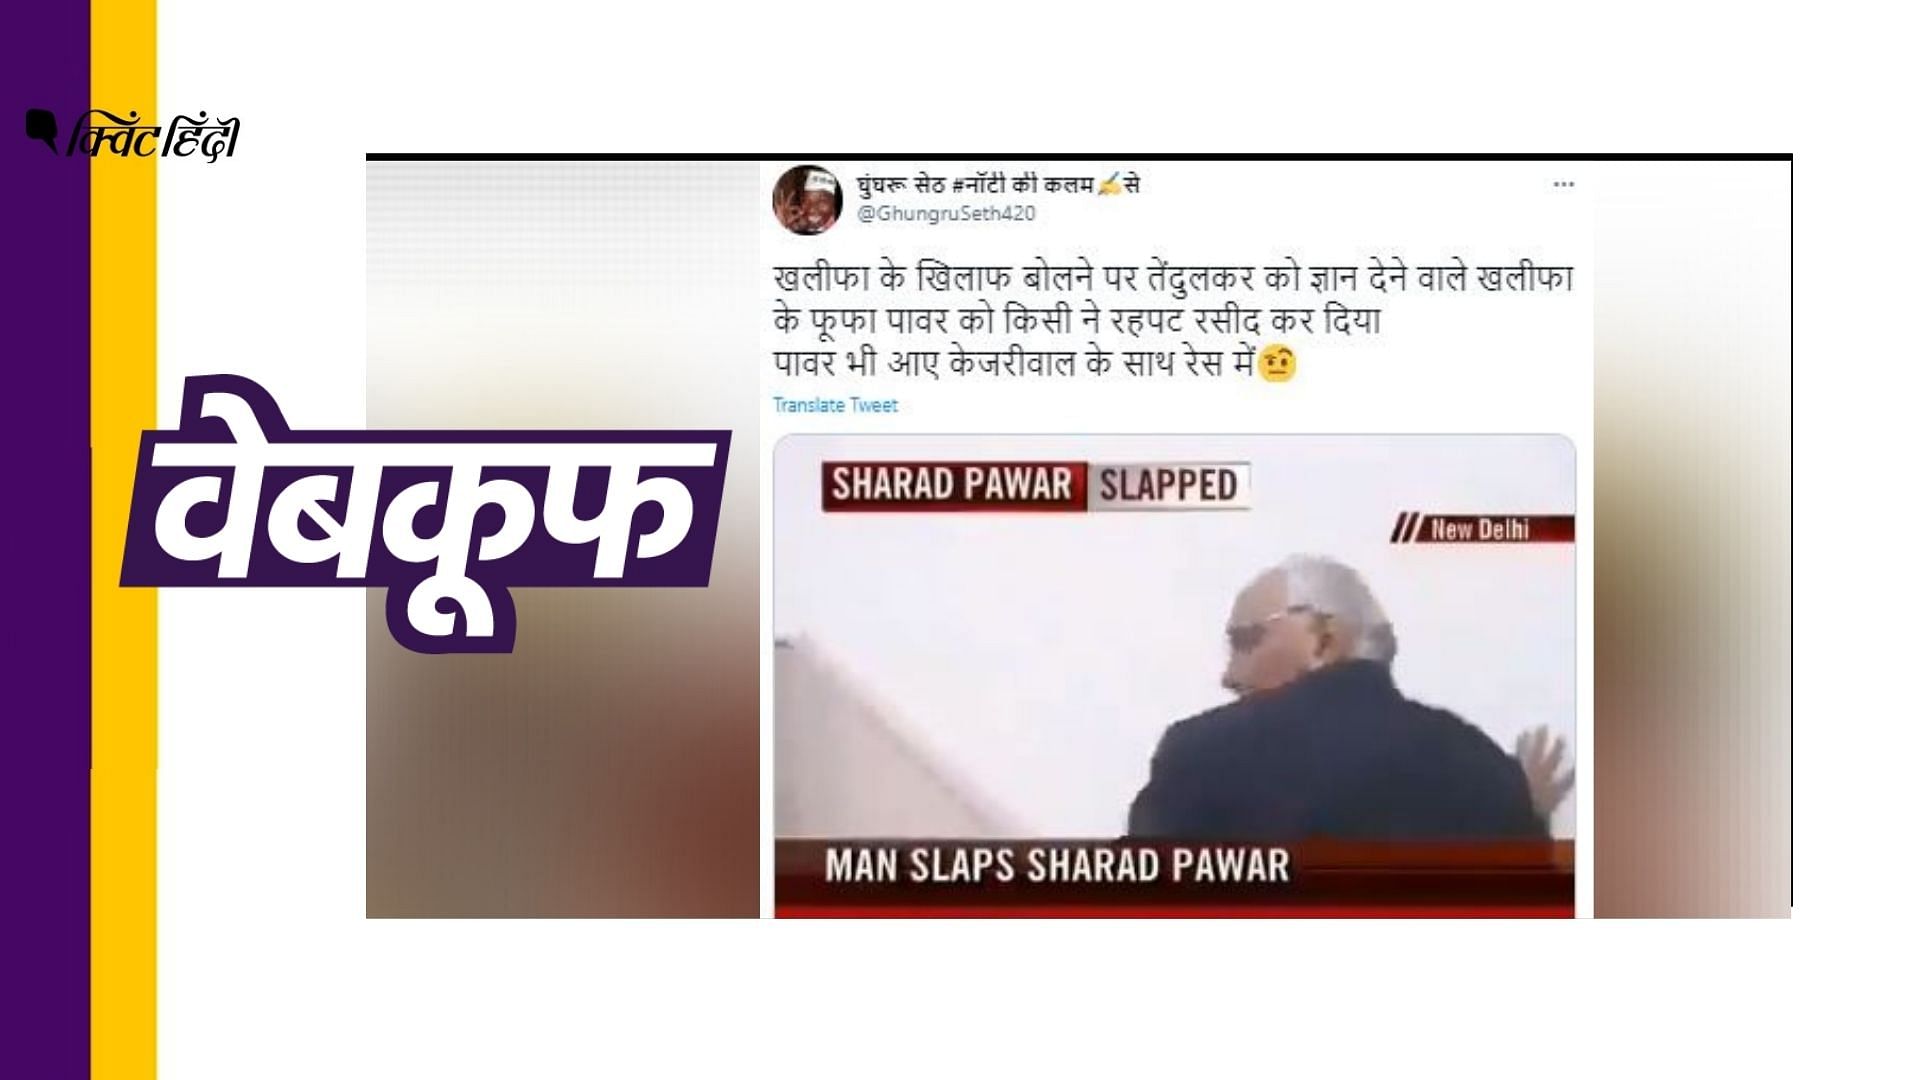 सचिन तेंदुलकर के  ट्वीट पर शरद पवार की प्रतिक्रिया के बाद का बताया जा रहा है ये वीडियो